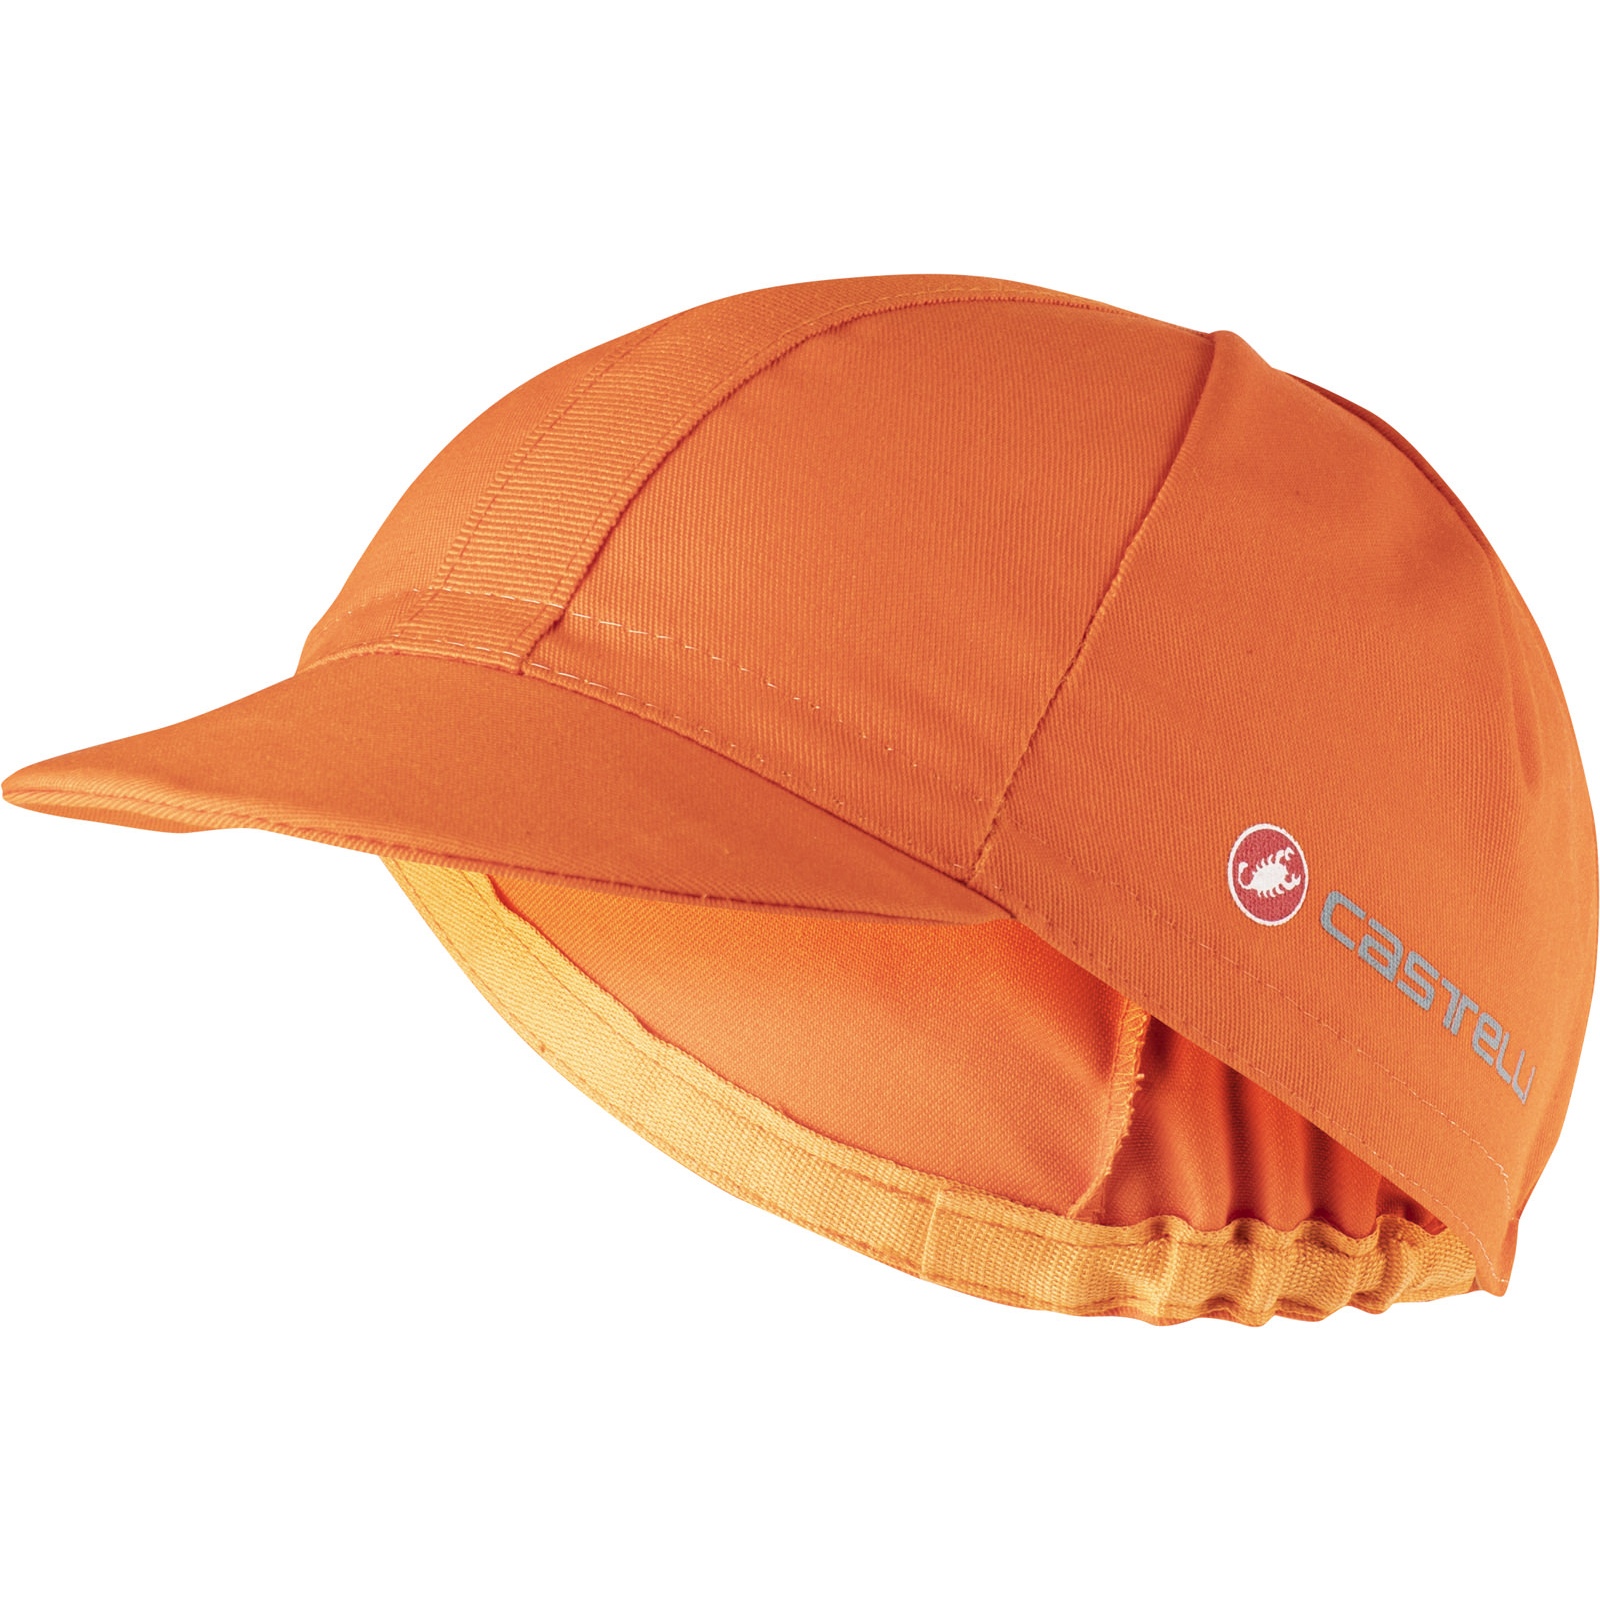 Produktbild von Castelli Endurance Radmütze - brilliant orange 034